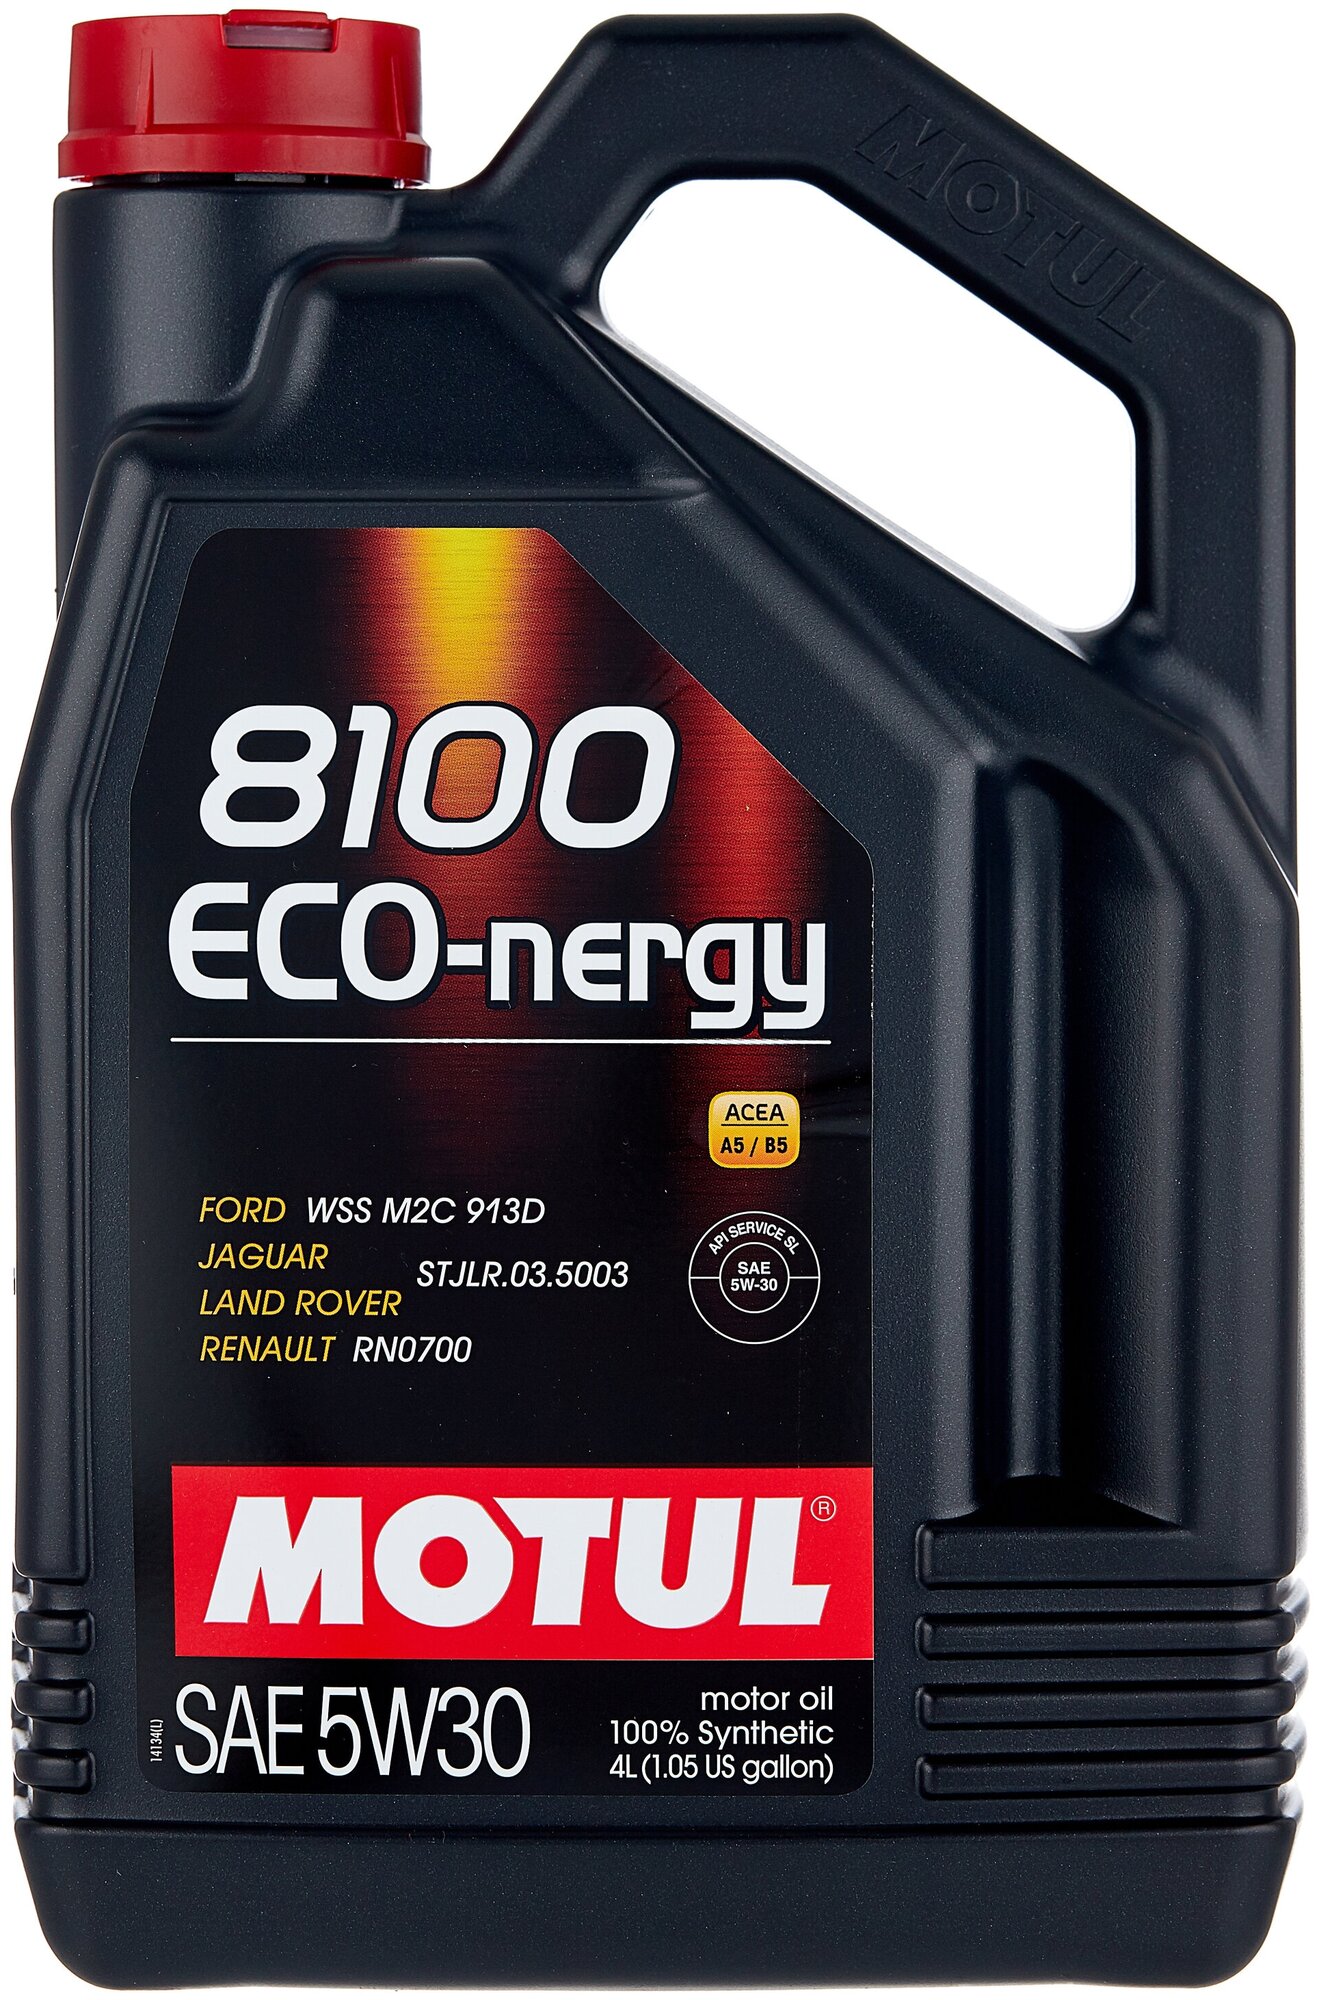 Минеральное моторное масло Motul 8100 Eco-nergy 5W30